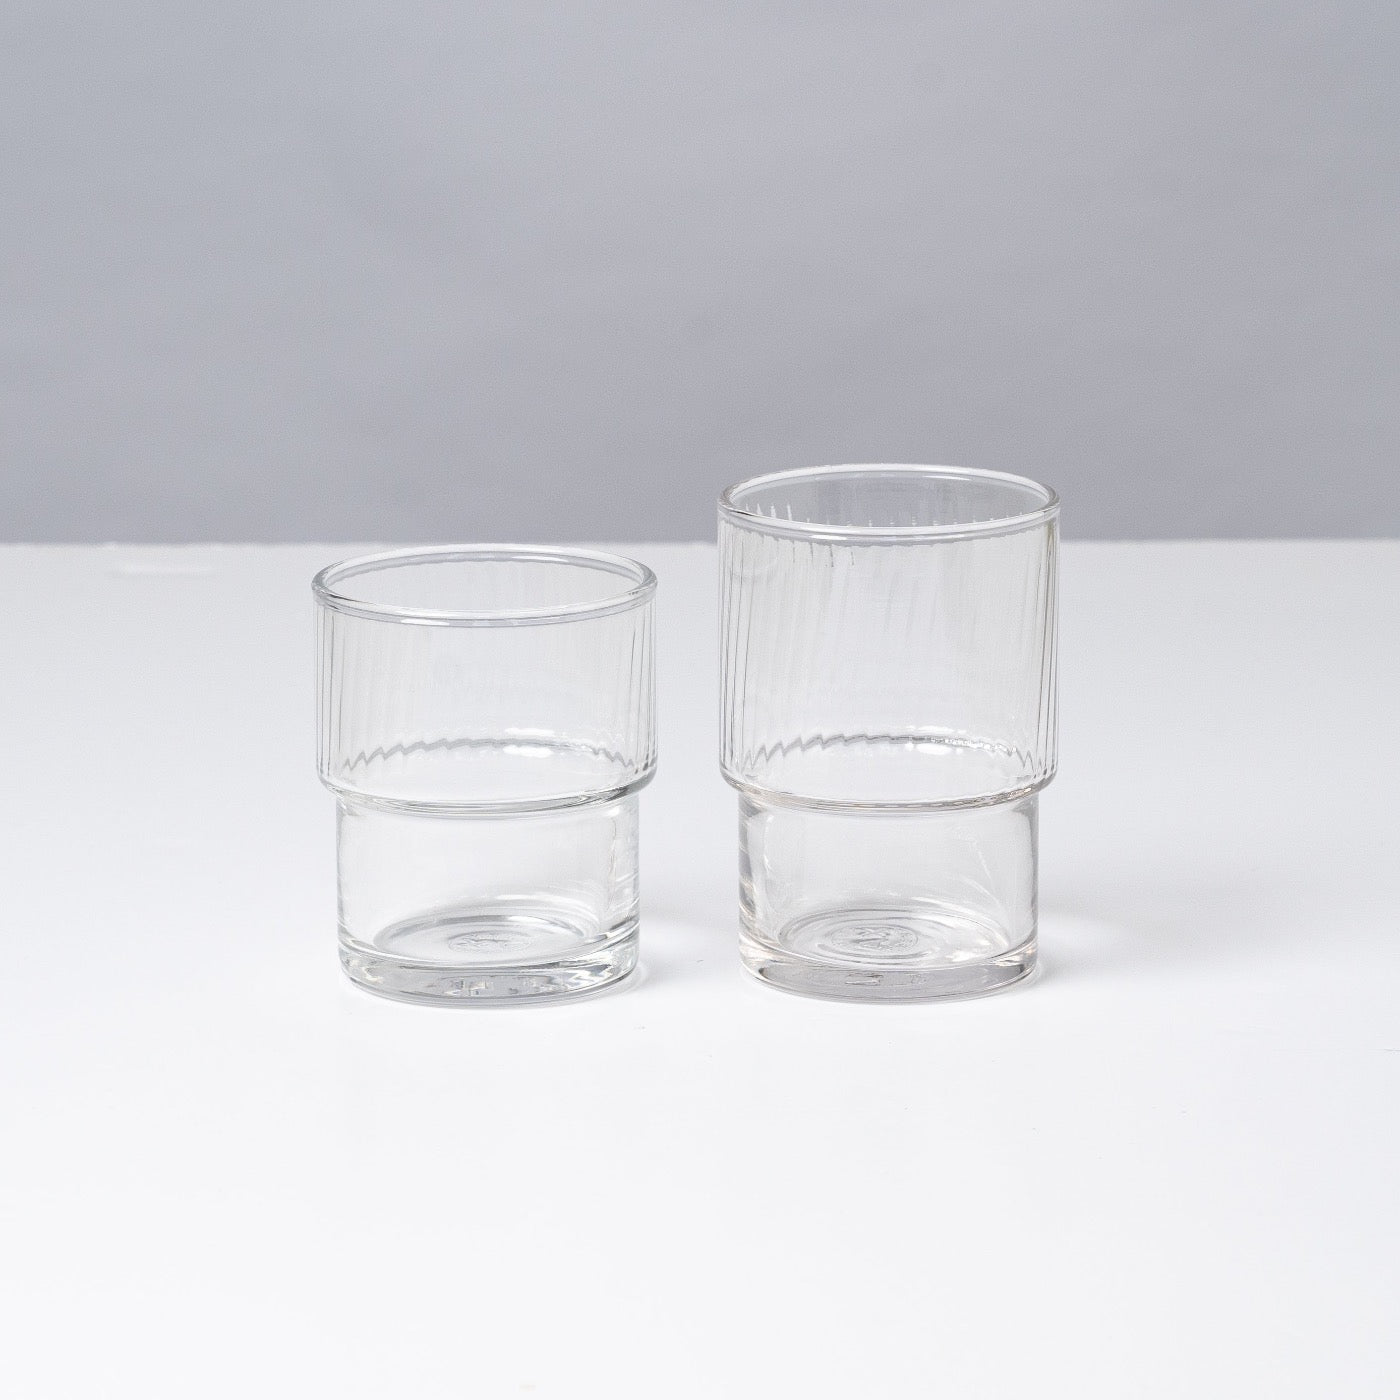 stacking glass assortment by Ishizuka Glass